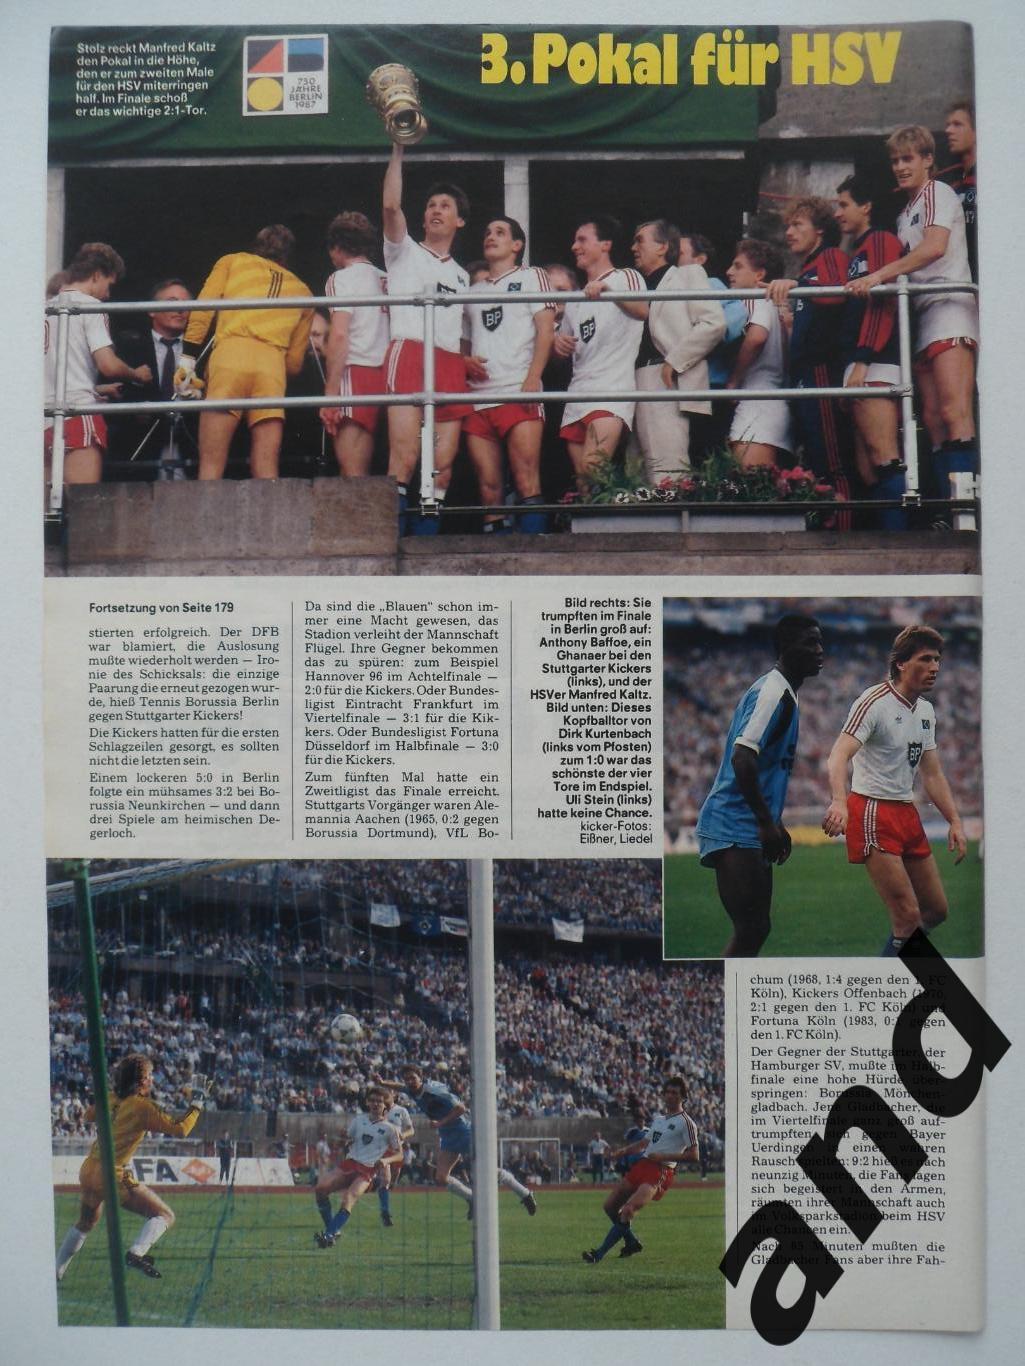 Гамбург - обладатель Кубка ФРГ 1987